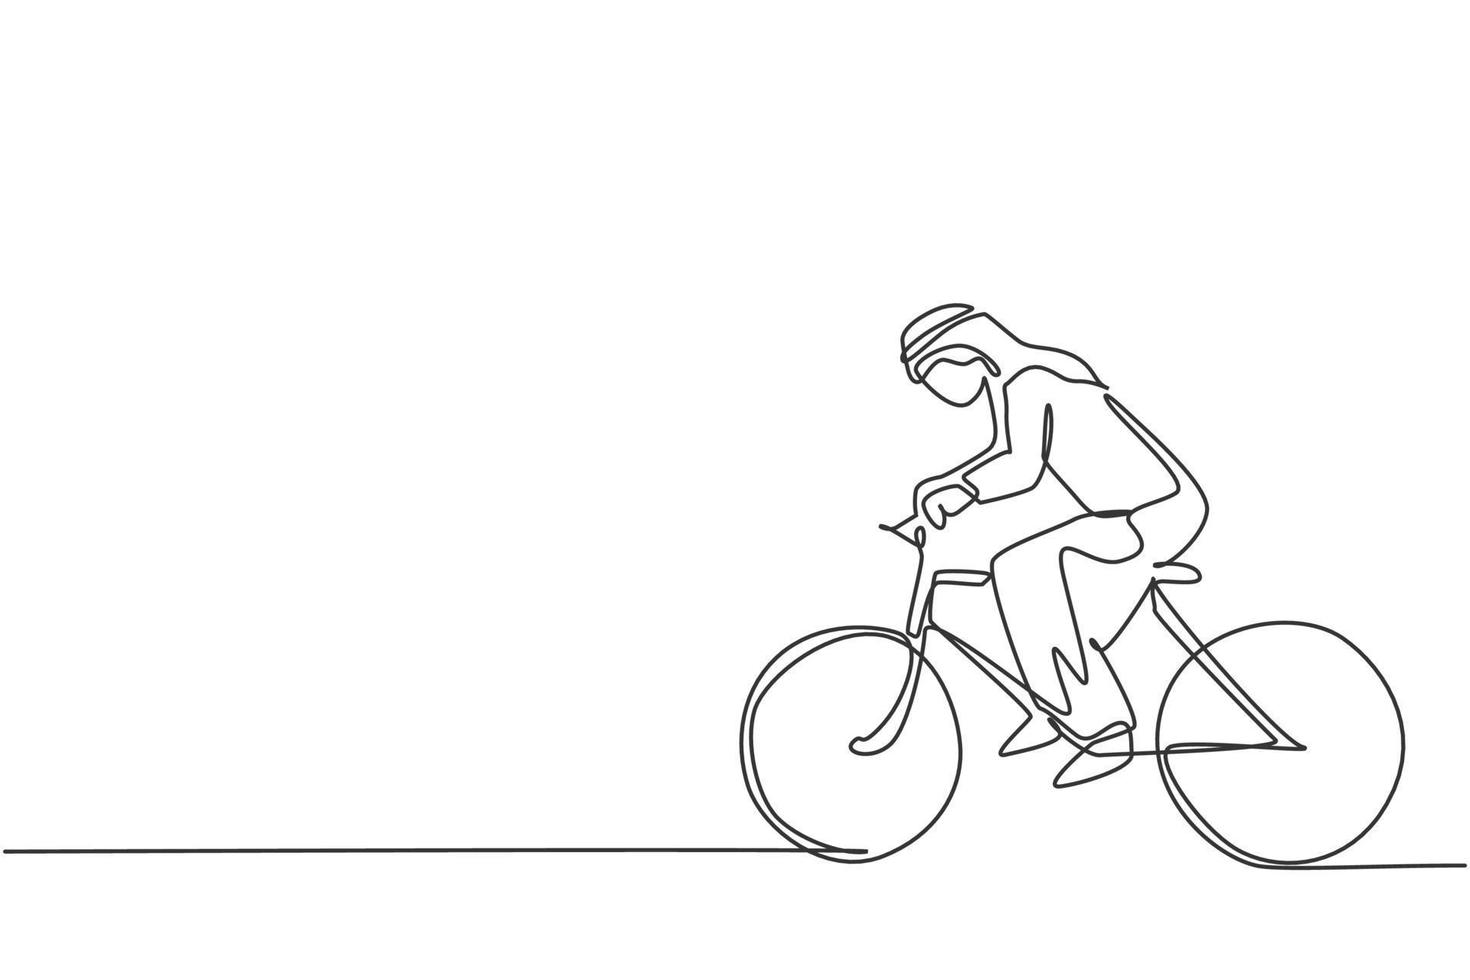 Einzelne durchgehende Strichzeichnung eines jungen arabischen Geschäftsmannes, der Fahrrad fährt, geht ins Büro. sportliche Berufskraft. Minimalismus-Konzept dynamische eine Linie zeichnen Grafikdesign-Vektor-Illustration vektor